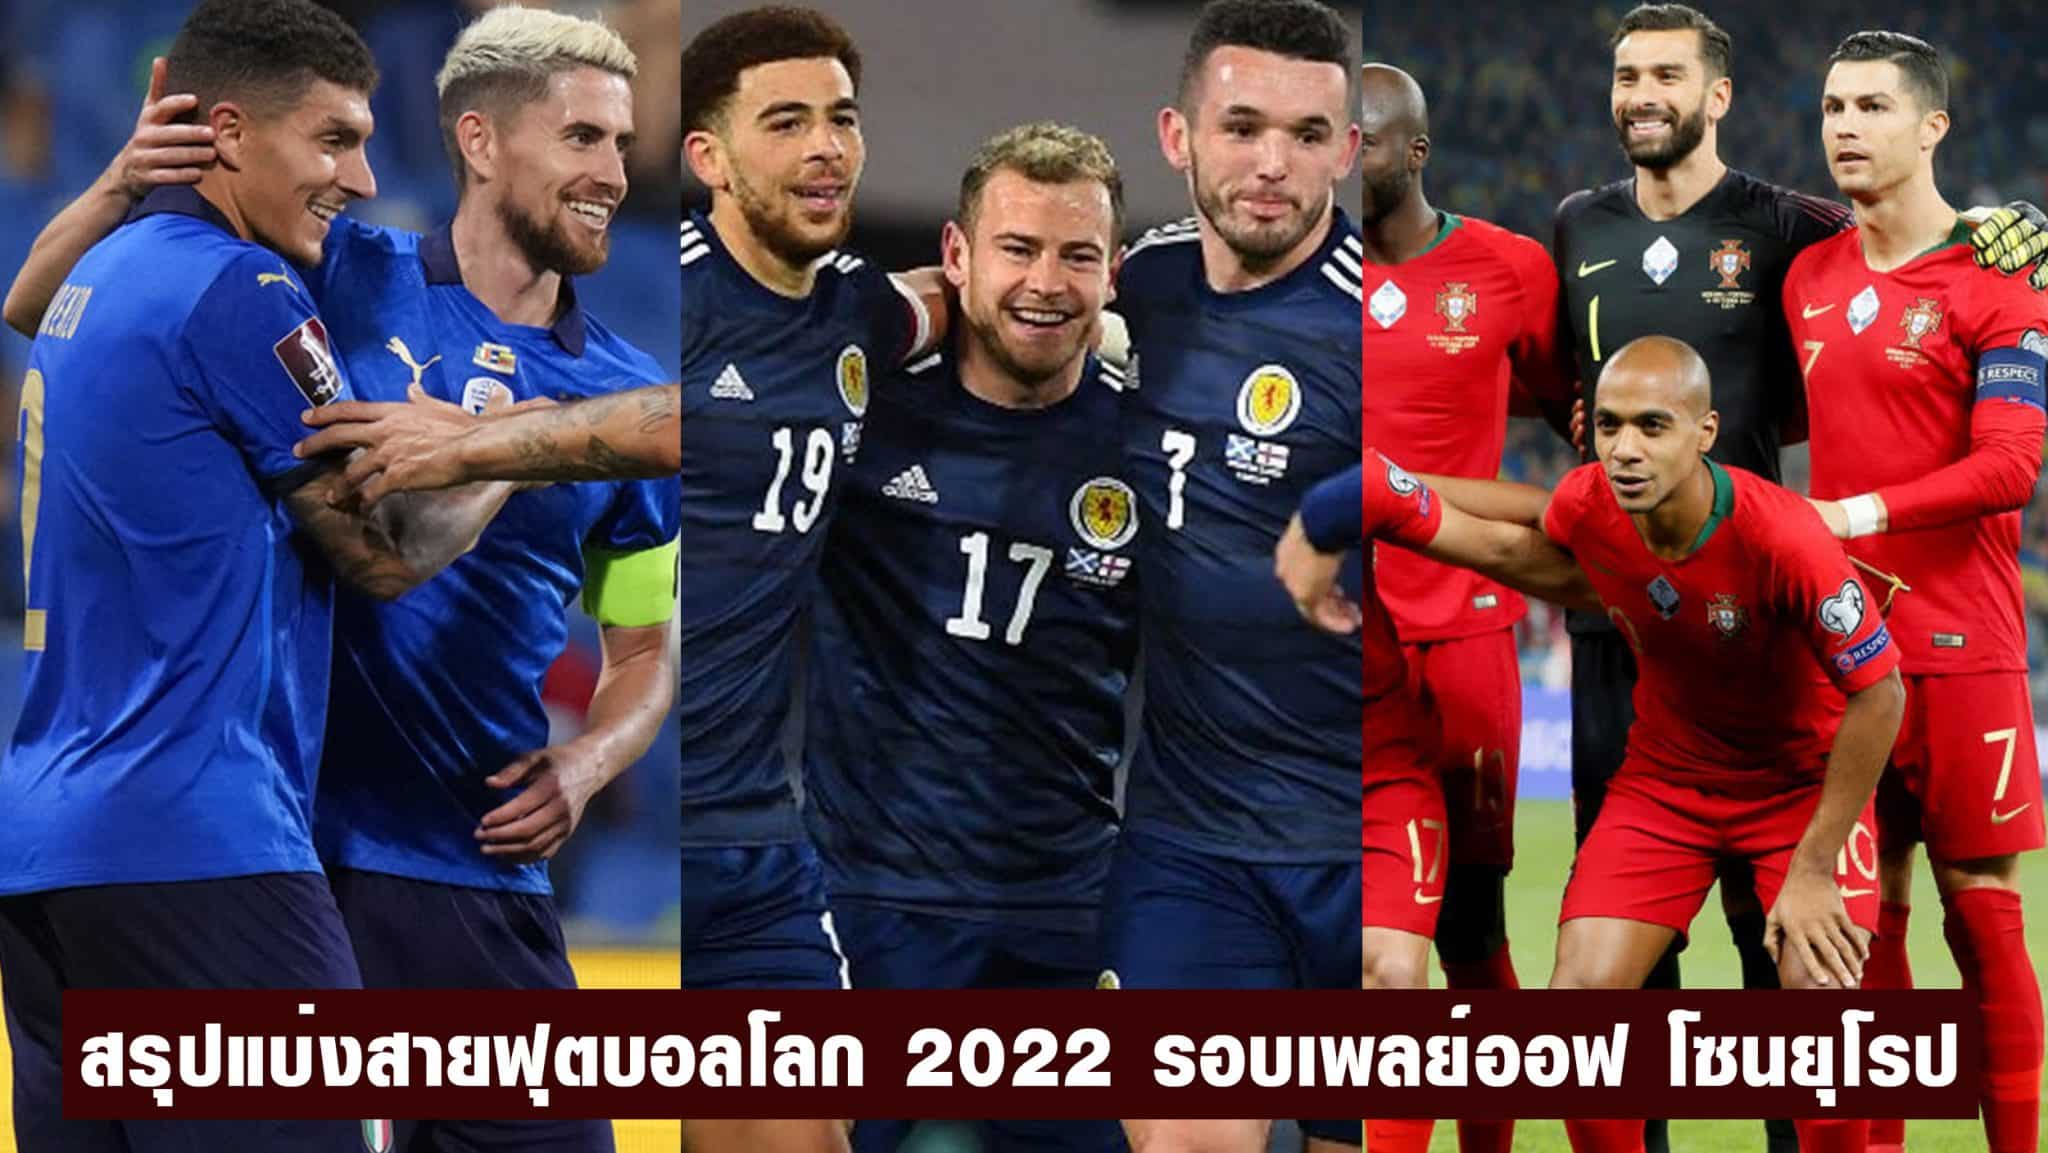 ผล ฟุตบอลโลก รอบคัดเลือก โซนยุโรป 2022